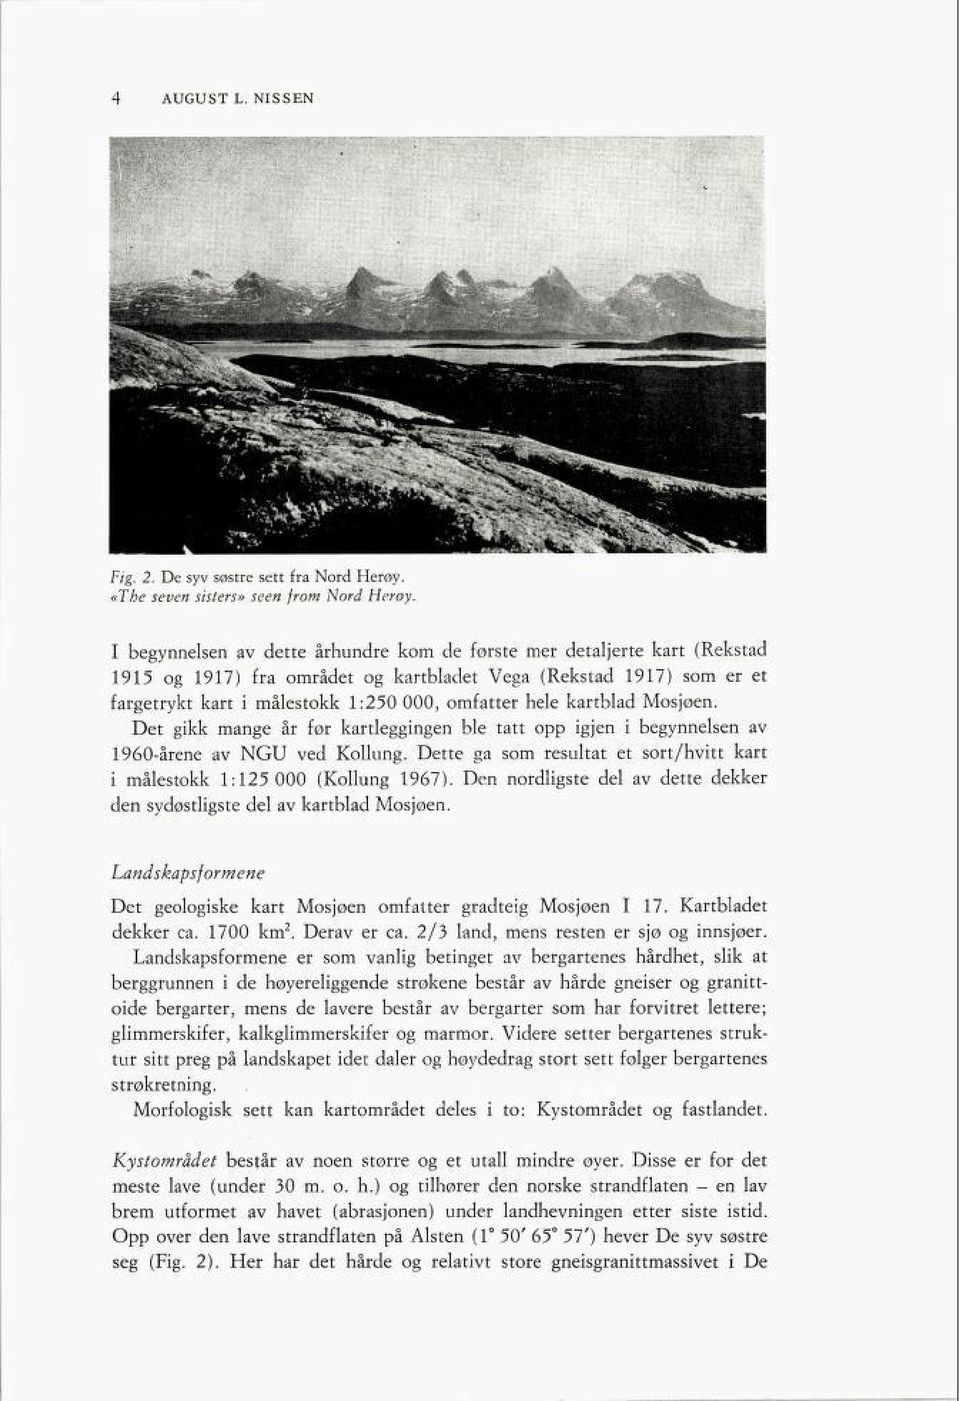 kartblad Mosjøen. Det gikk mange år før kartleggingen ble tatt opp igjen i begynnelsen av 1960-årene av NGU ved Kollung. Dette ga som resultat et sort/hvitt kart i målestokk 1:125 000 (Kollung 1967).